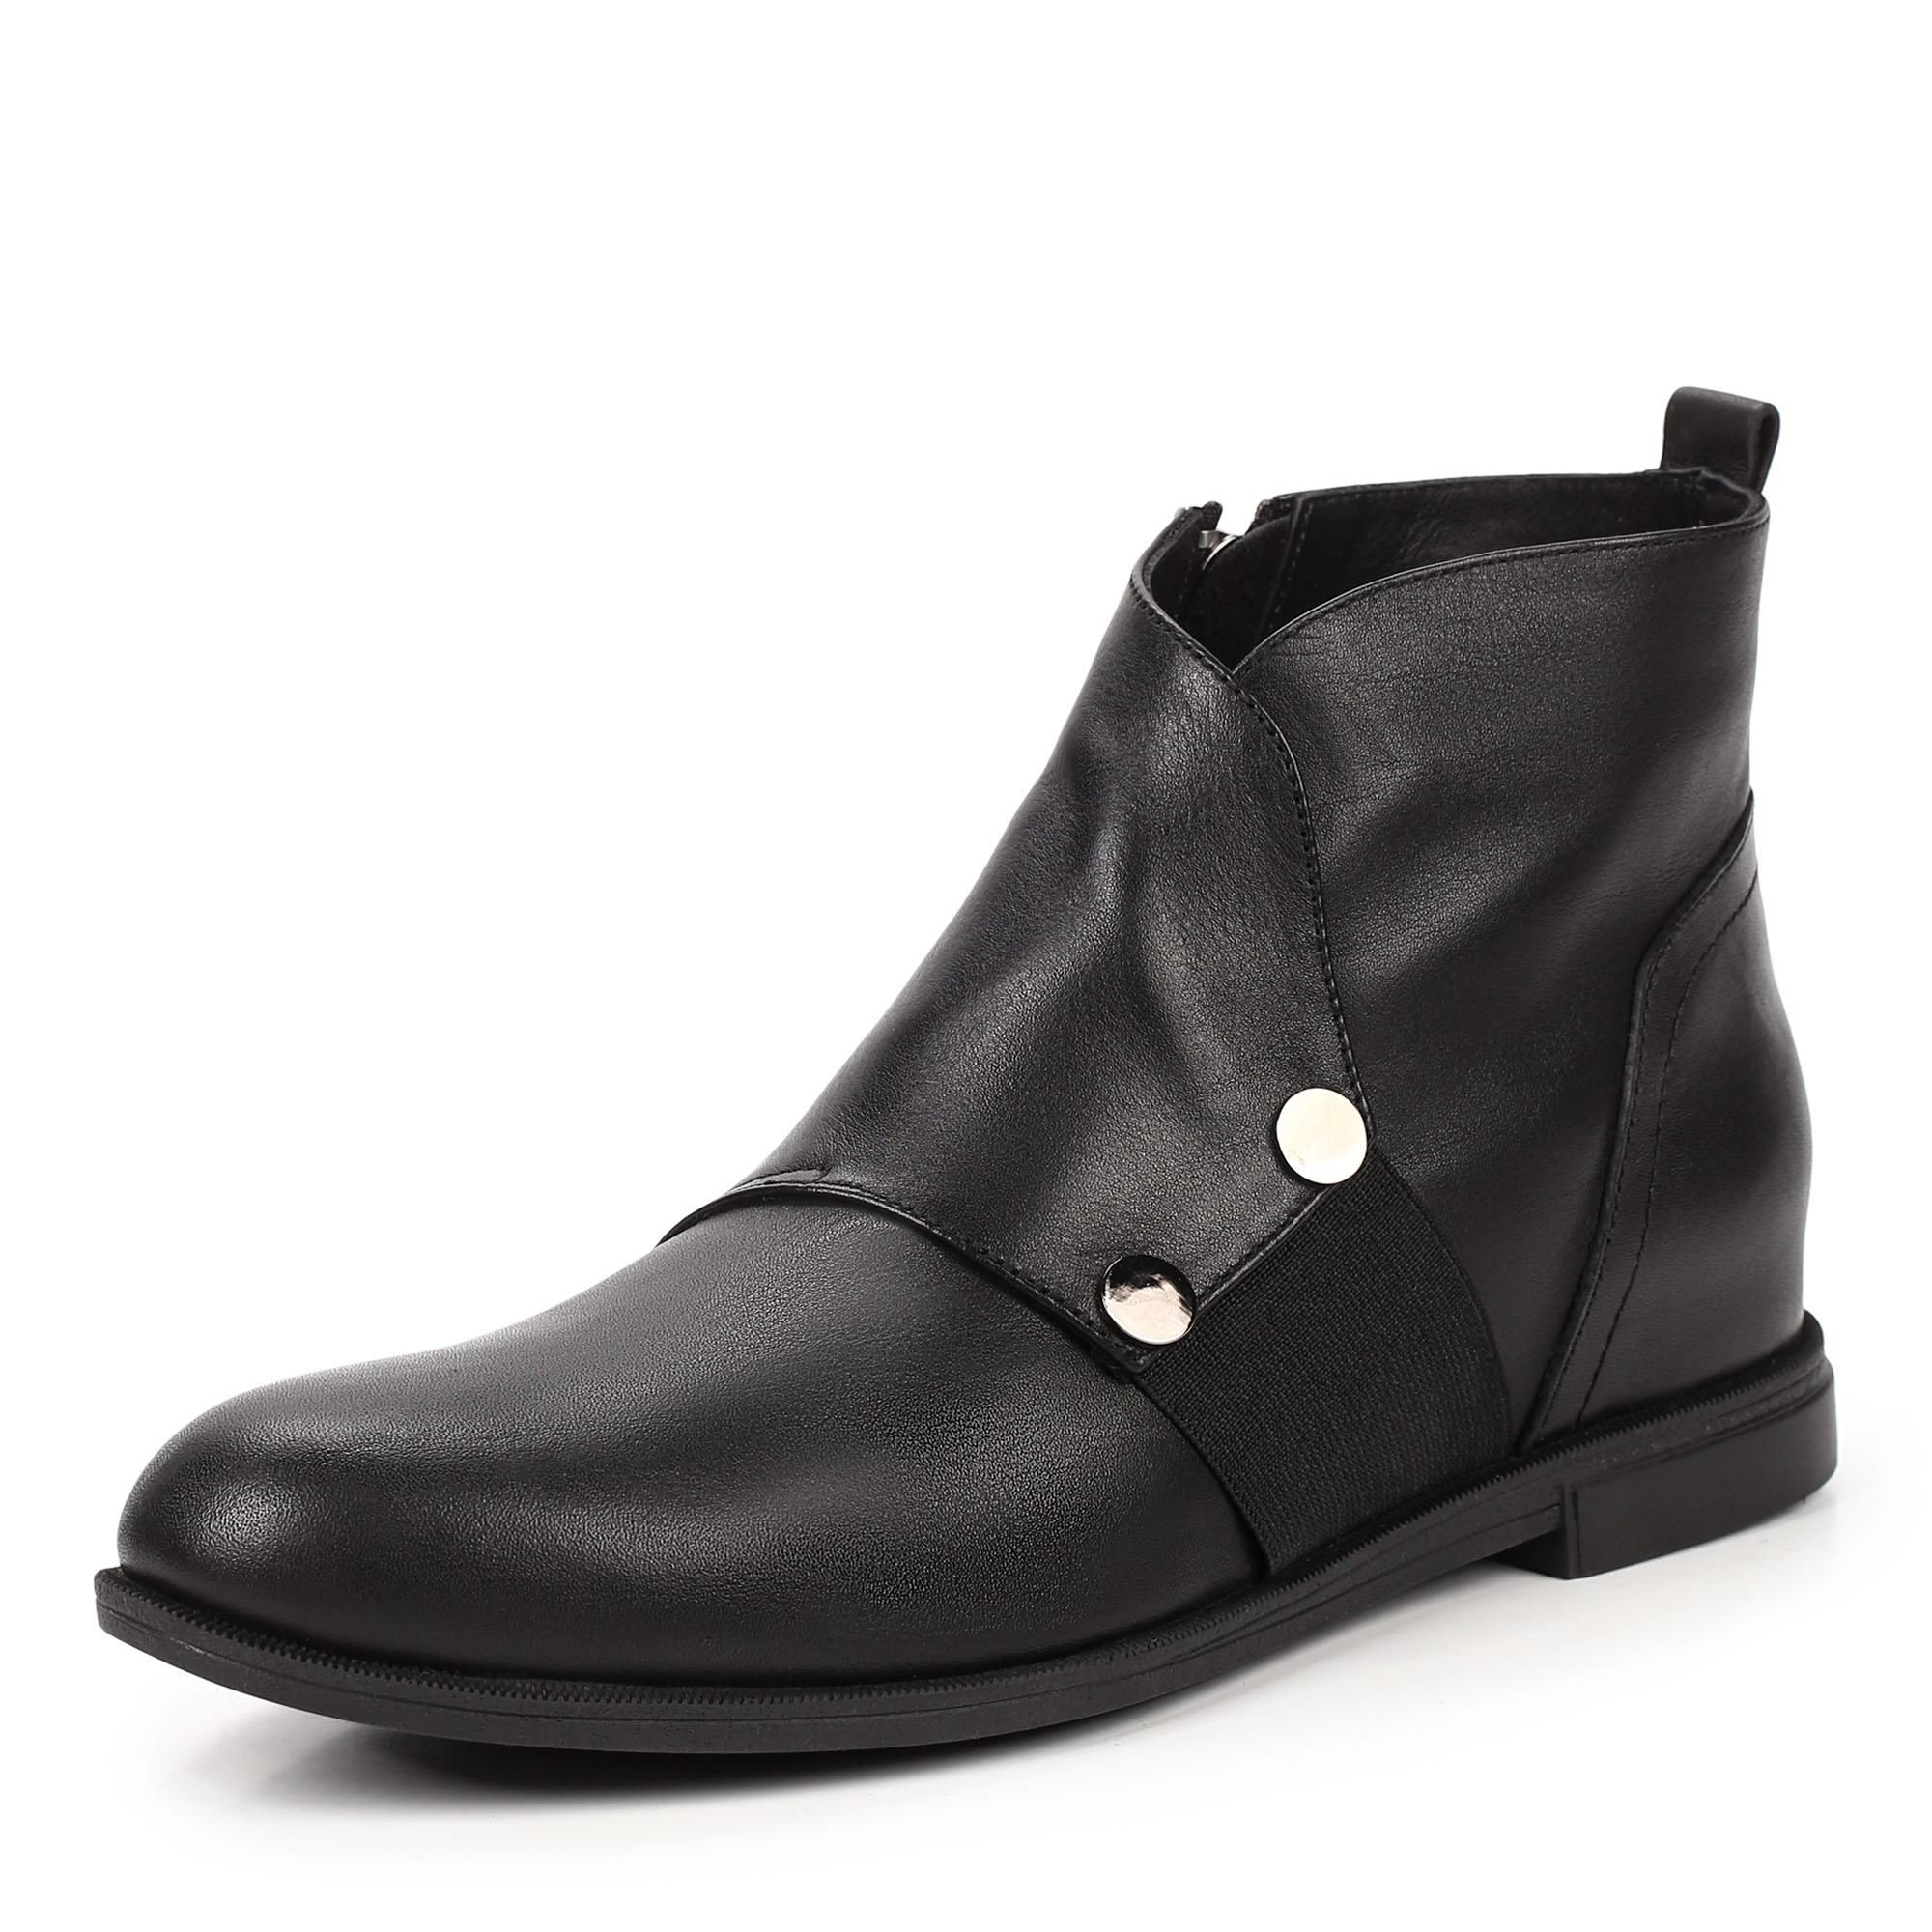 Ботинки Thomas Munz 539-014A-2102, цвет черный, размер 39 - фото 2